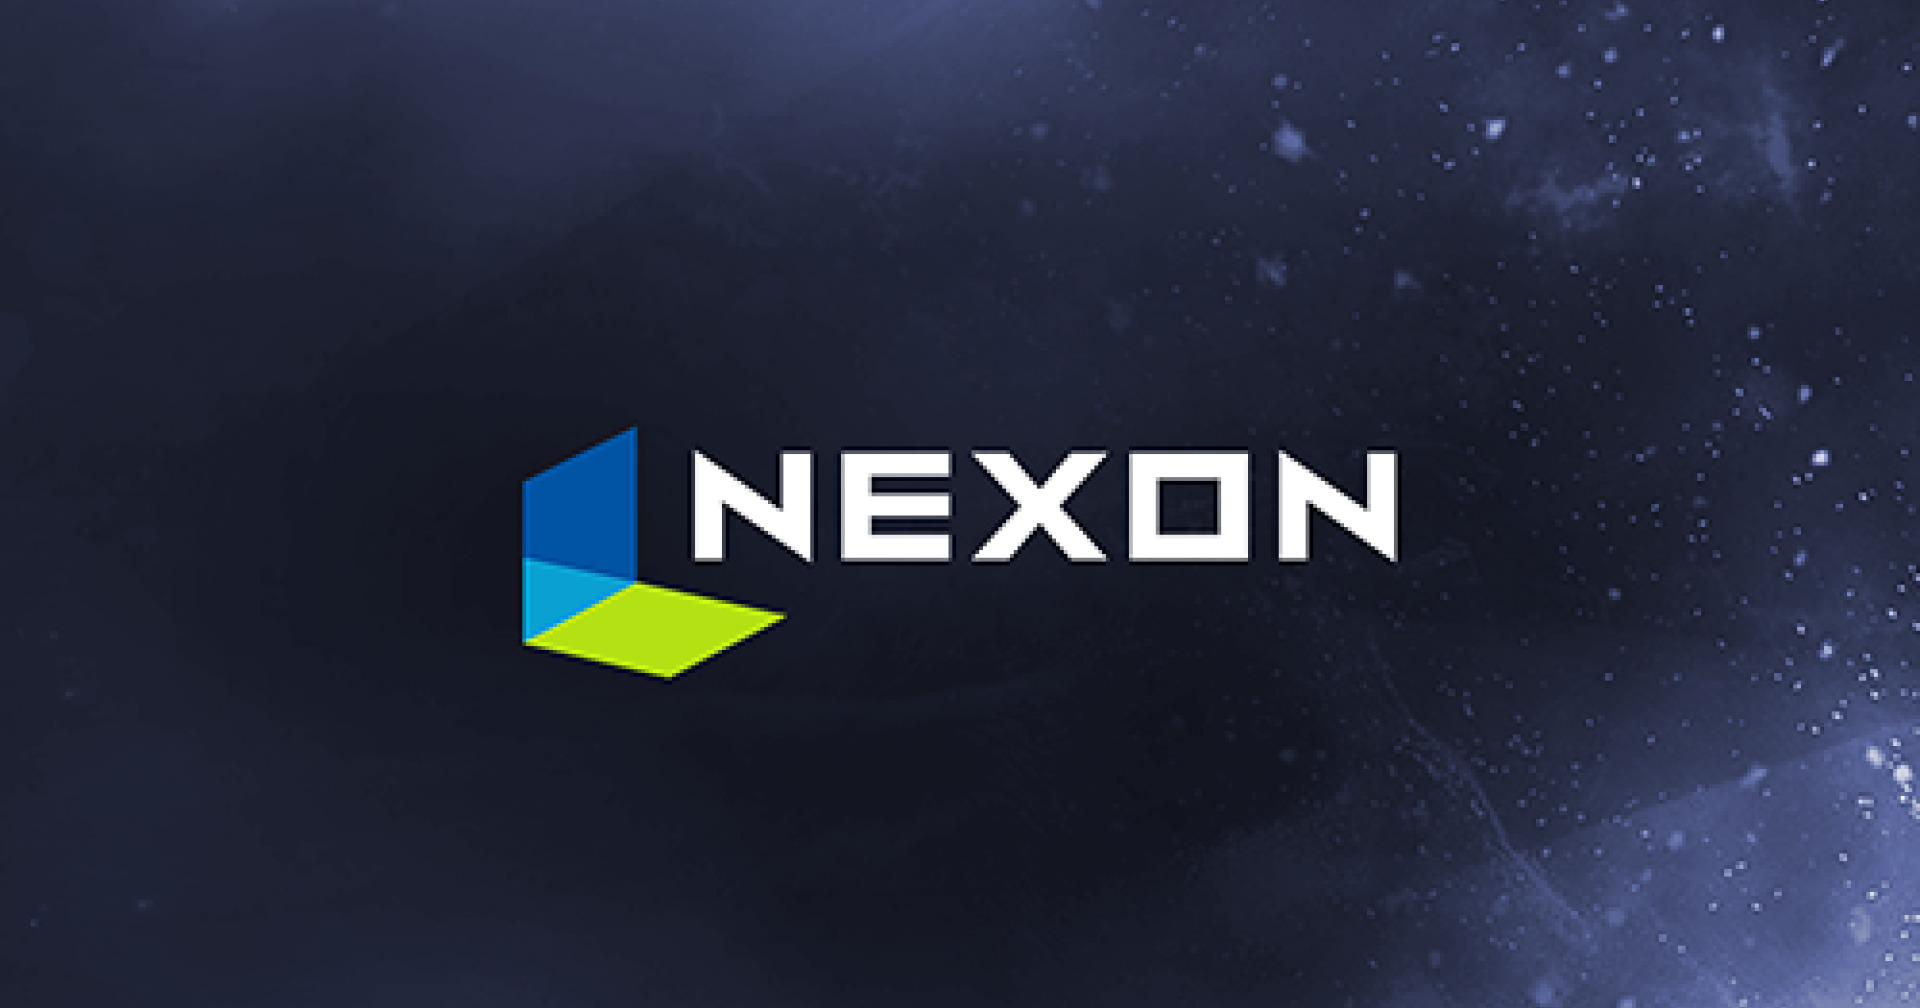 Nexon ควบรวม 2 บริษัท รุกตลาดเกมมือถือ